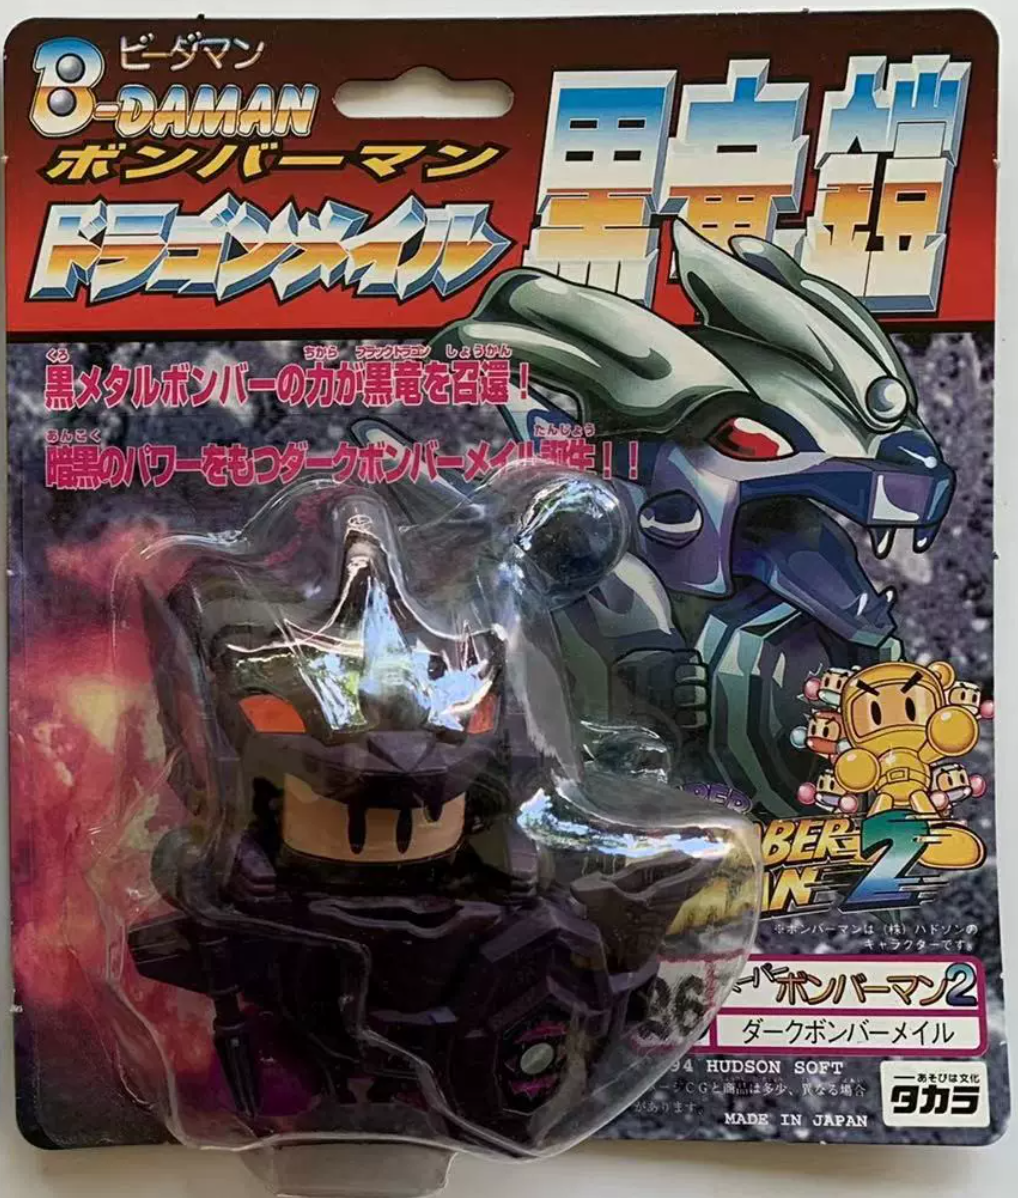 Takara 1994 Hudson Soft B-Daman Bomberman 2 No 26 Black Metal Yoroi Bomber Man and Dark Dragon Model Kit Action Figure